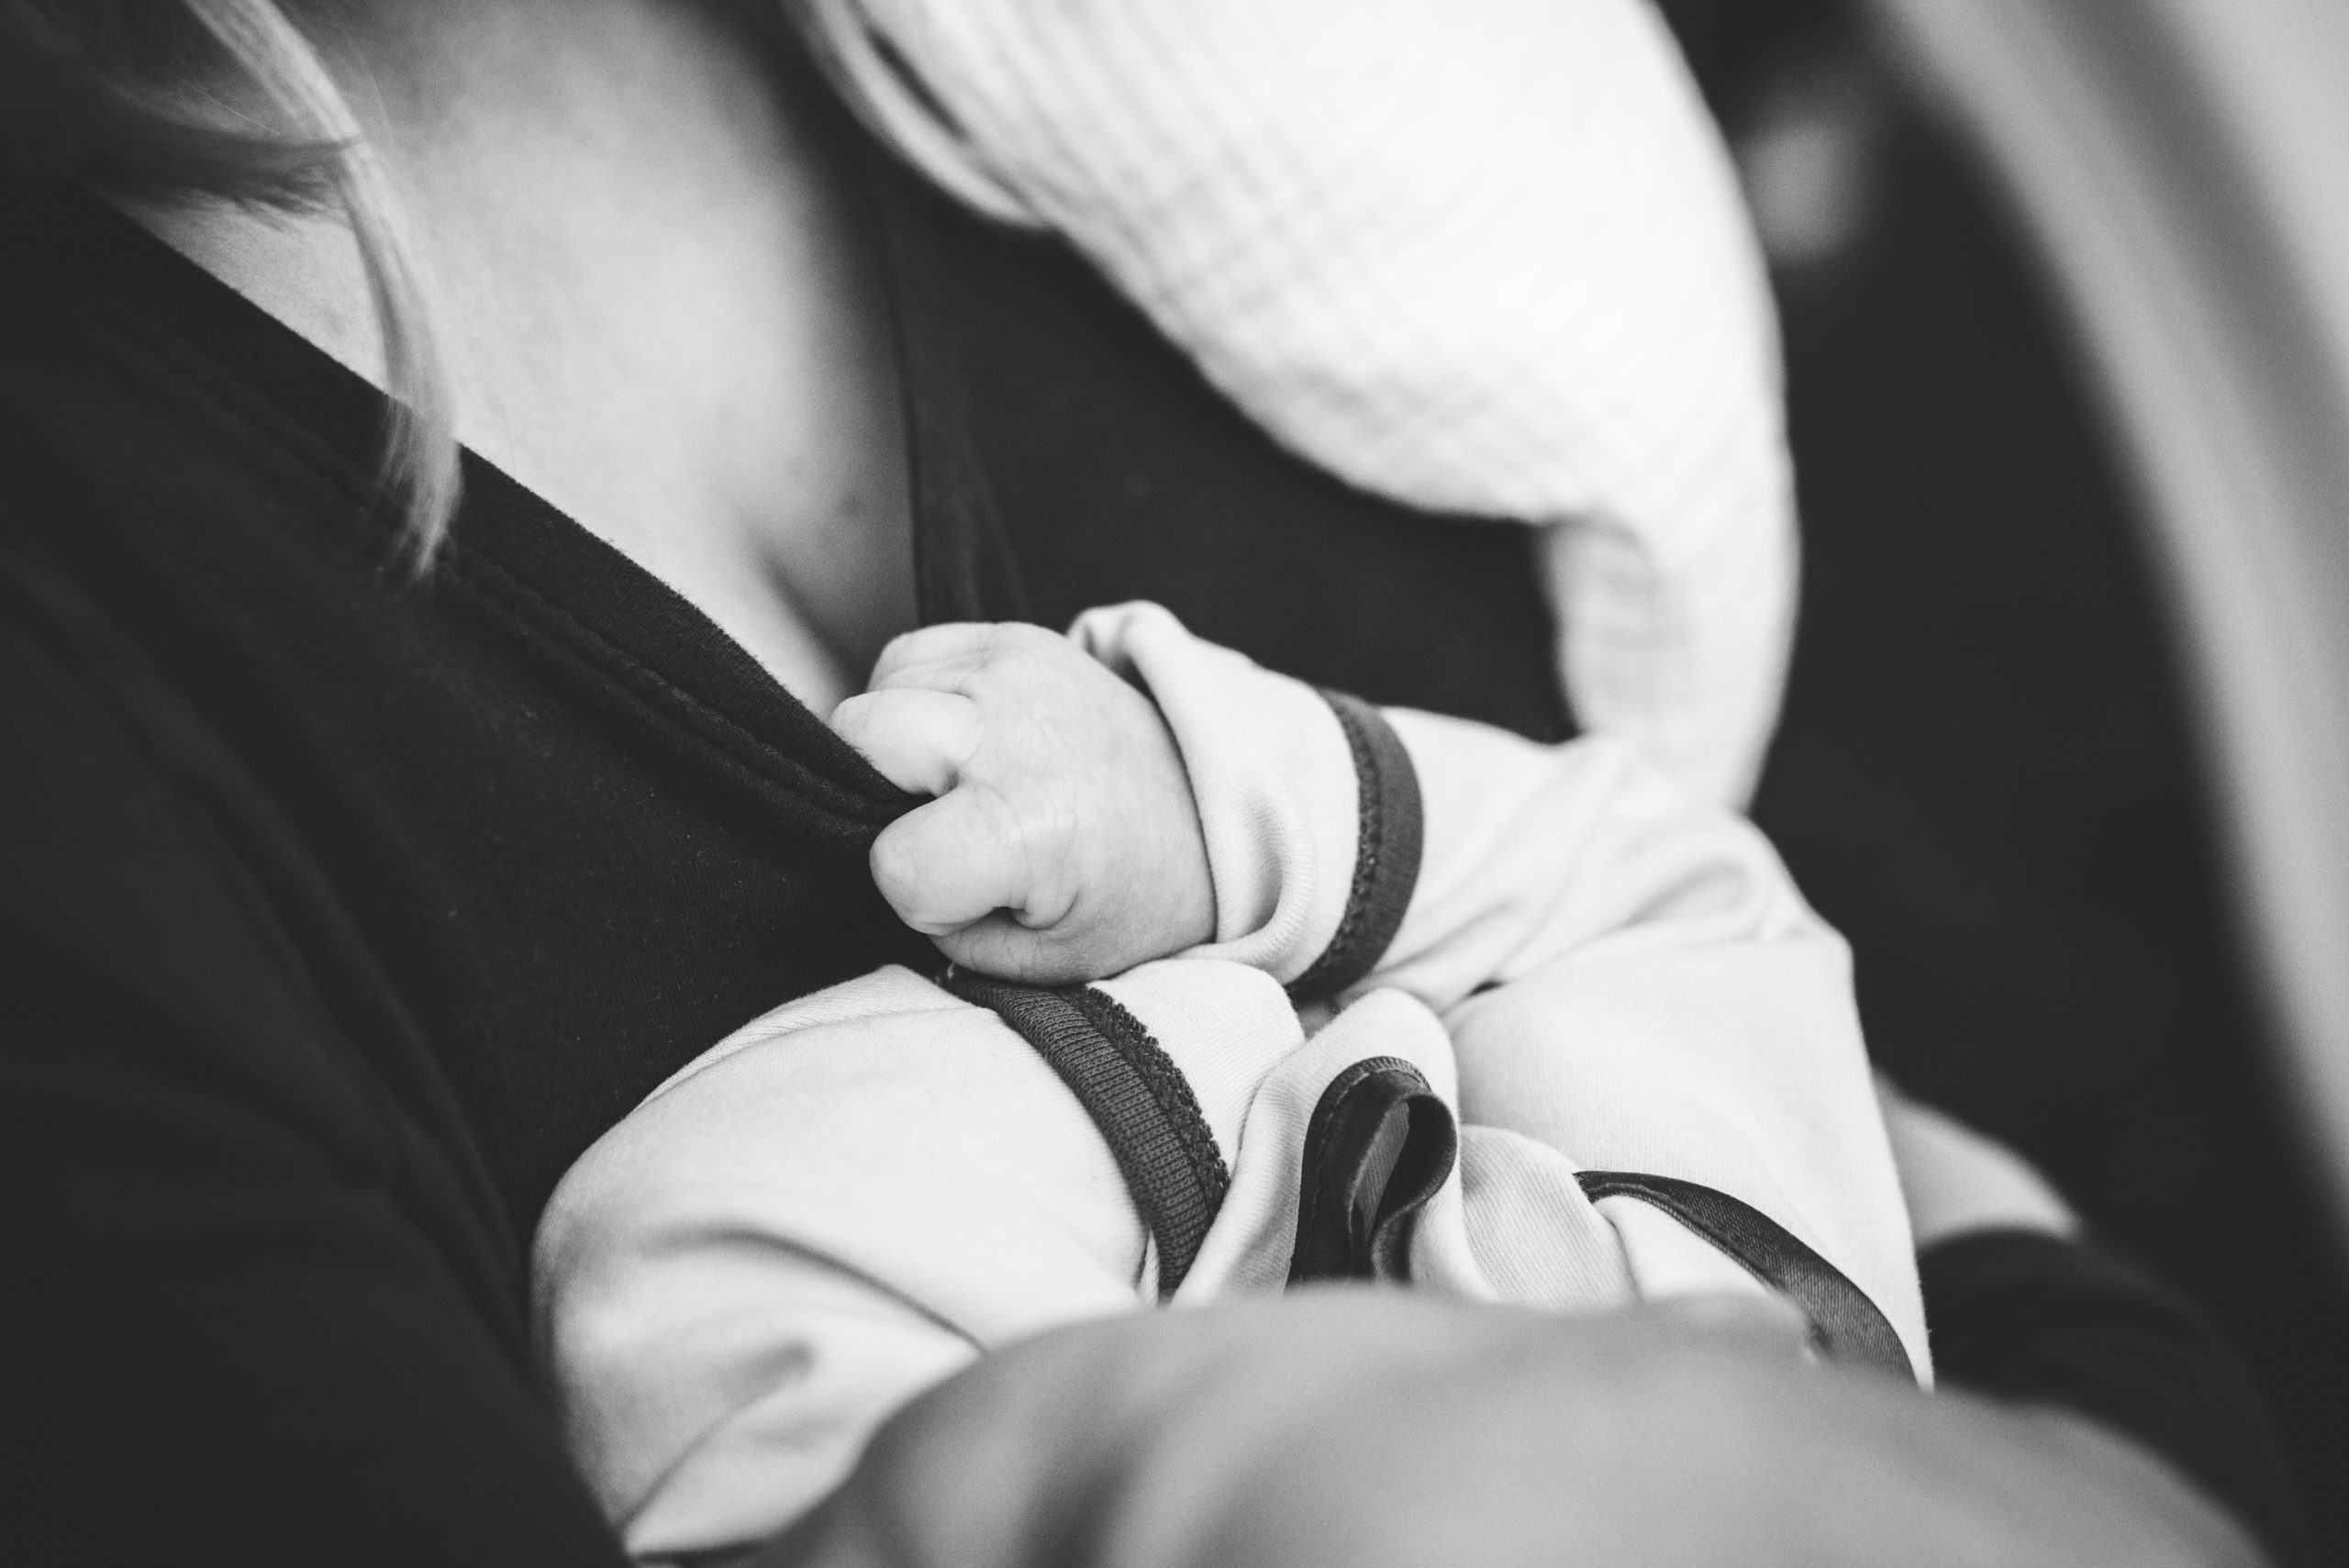 Ιταλία: Ο μητρικός θηλασμός στους χώρους της Βουλής θα επιτρέπεται με απόφαση από αρμόδια επιτροπή